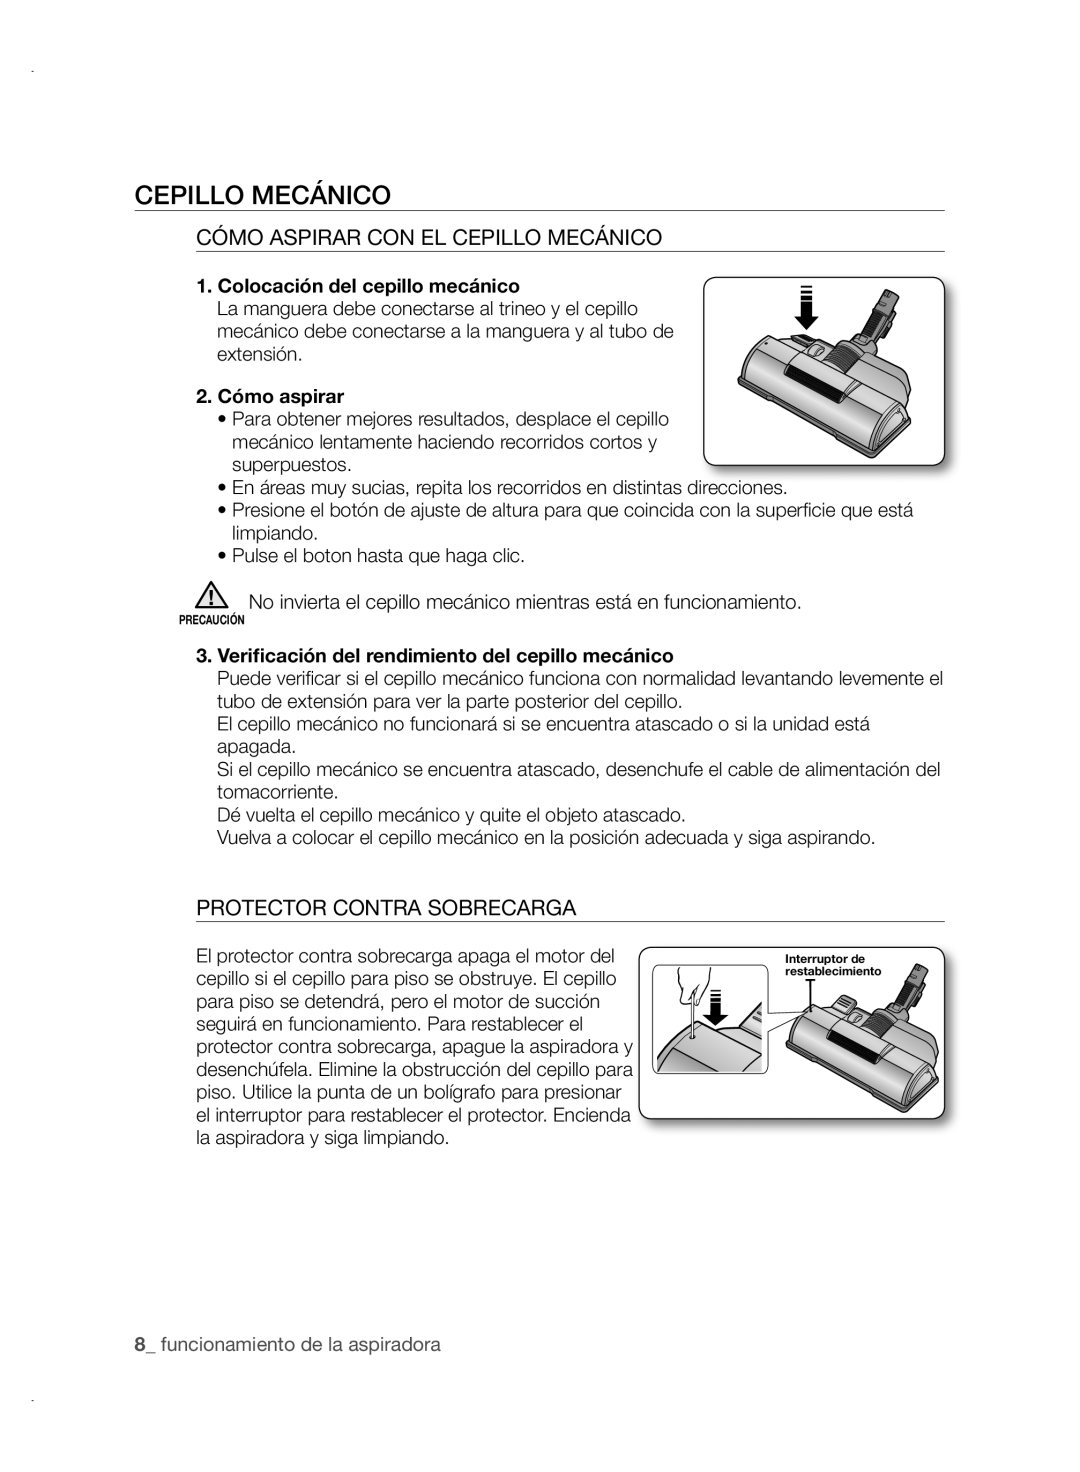 Samsung VCC88P0H1B Cómo Aspirar Con El Cepillo Mecánico, Protector Contra Sobrecarga, Colocación del cepillo mecánico 